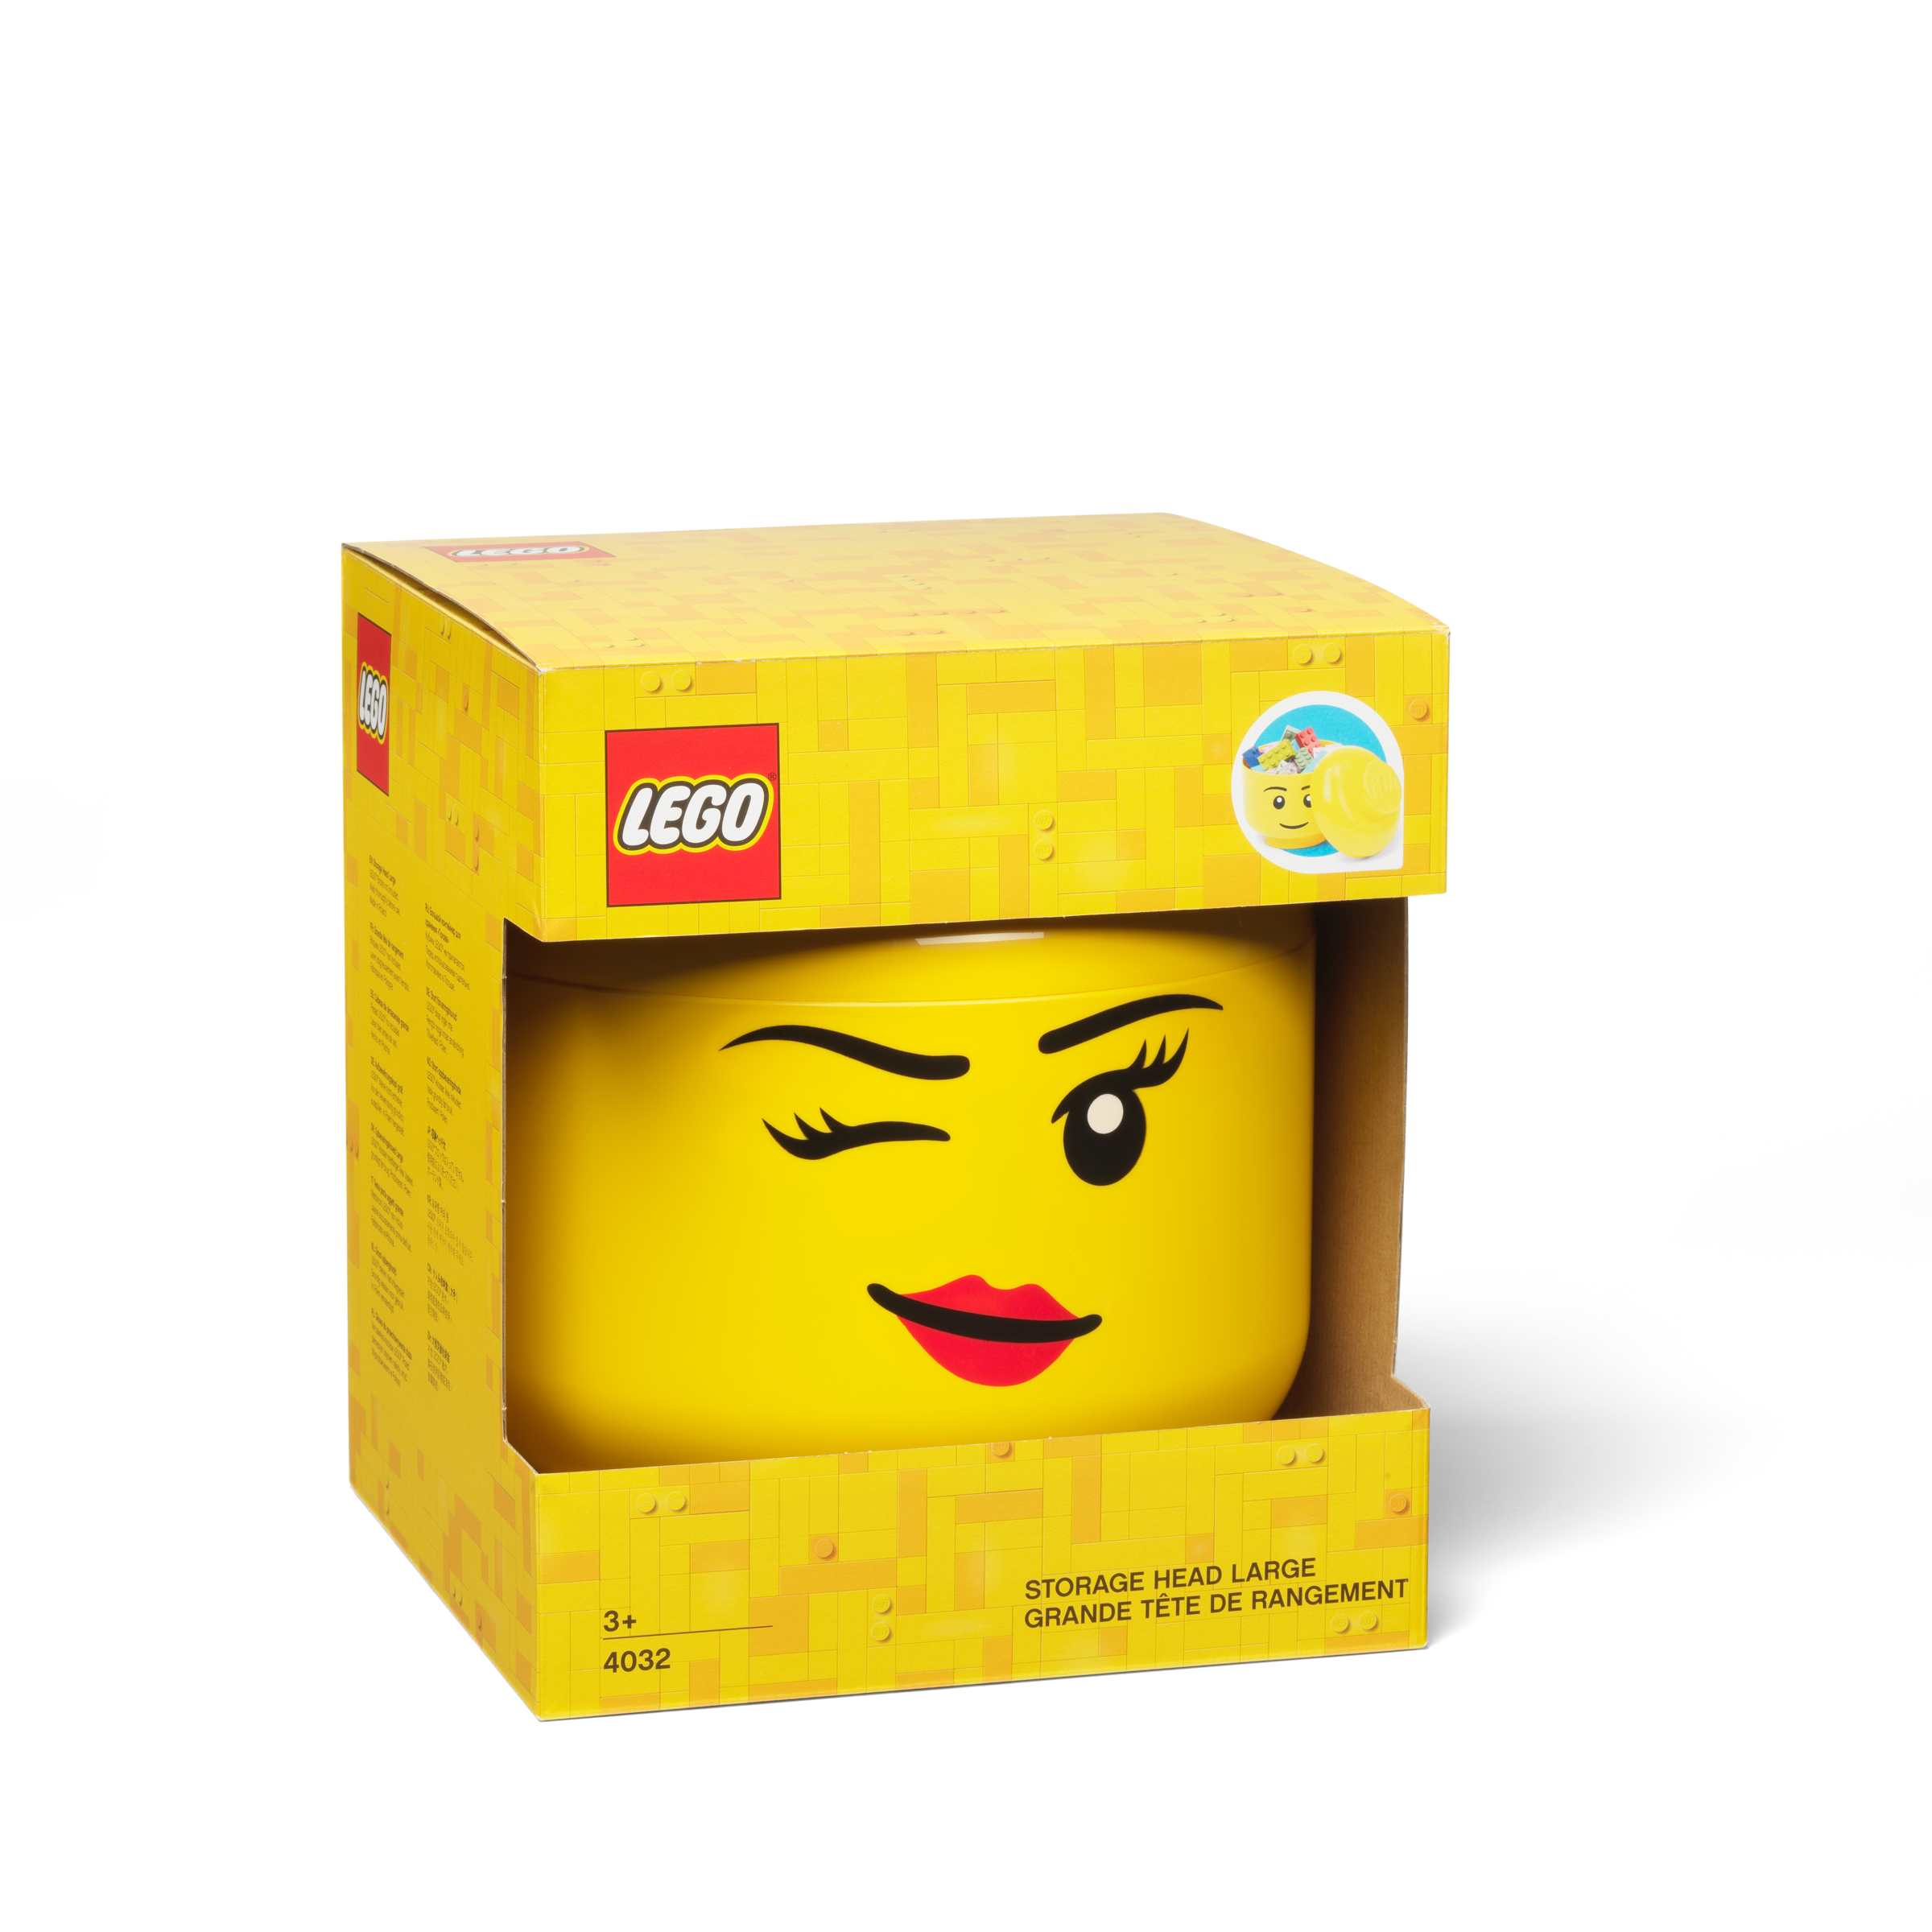 LEGO 4000805 Boîte de rangement LEGO avec 6 crampons, gris